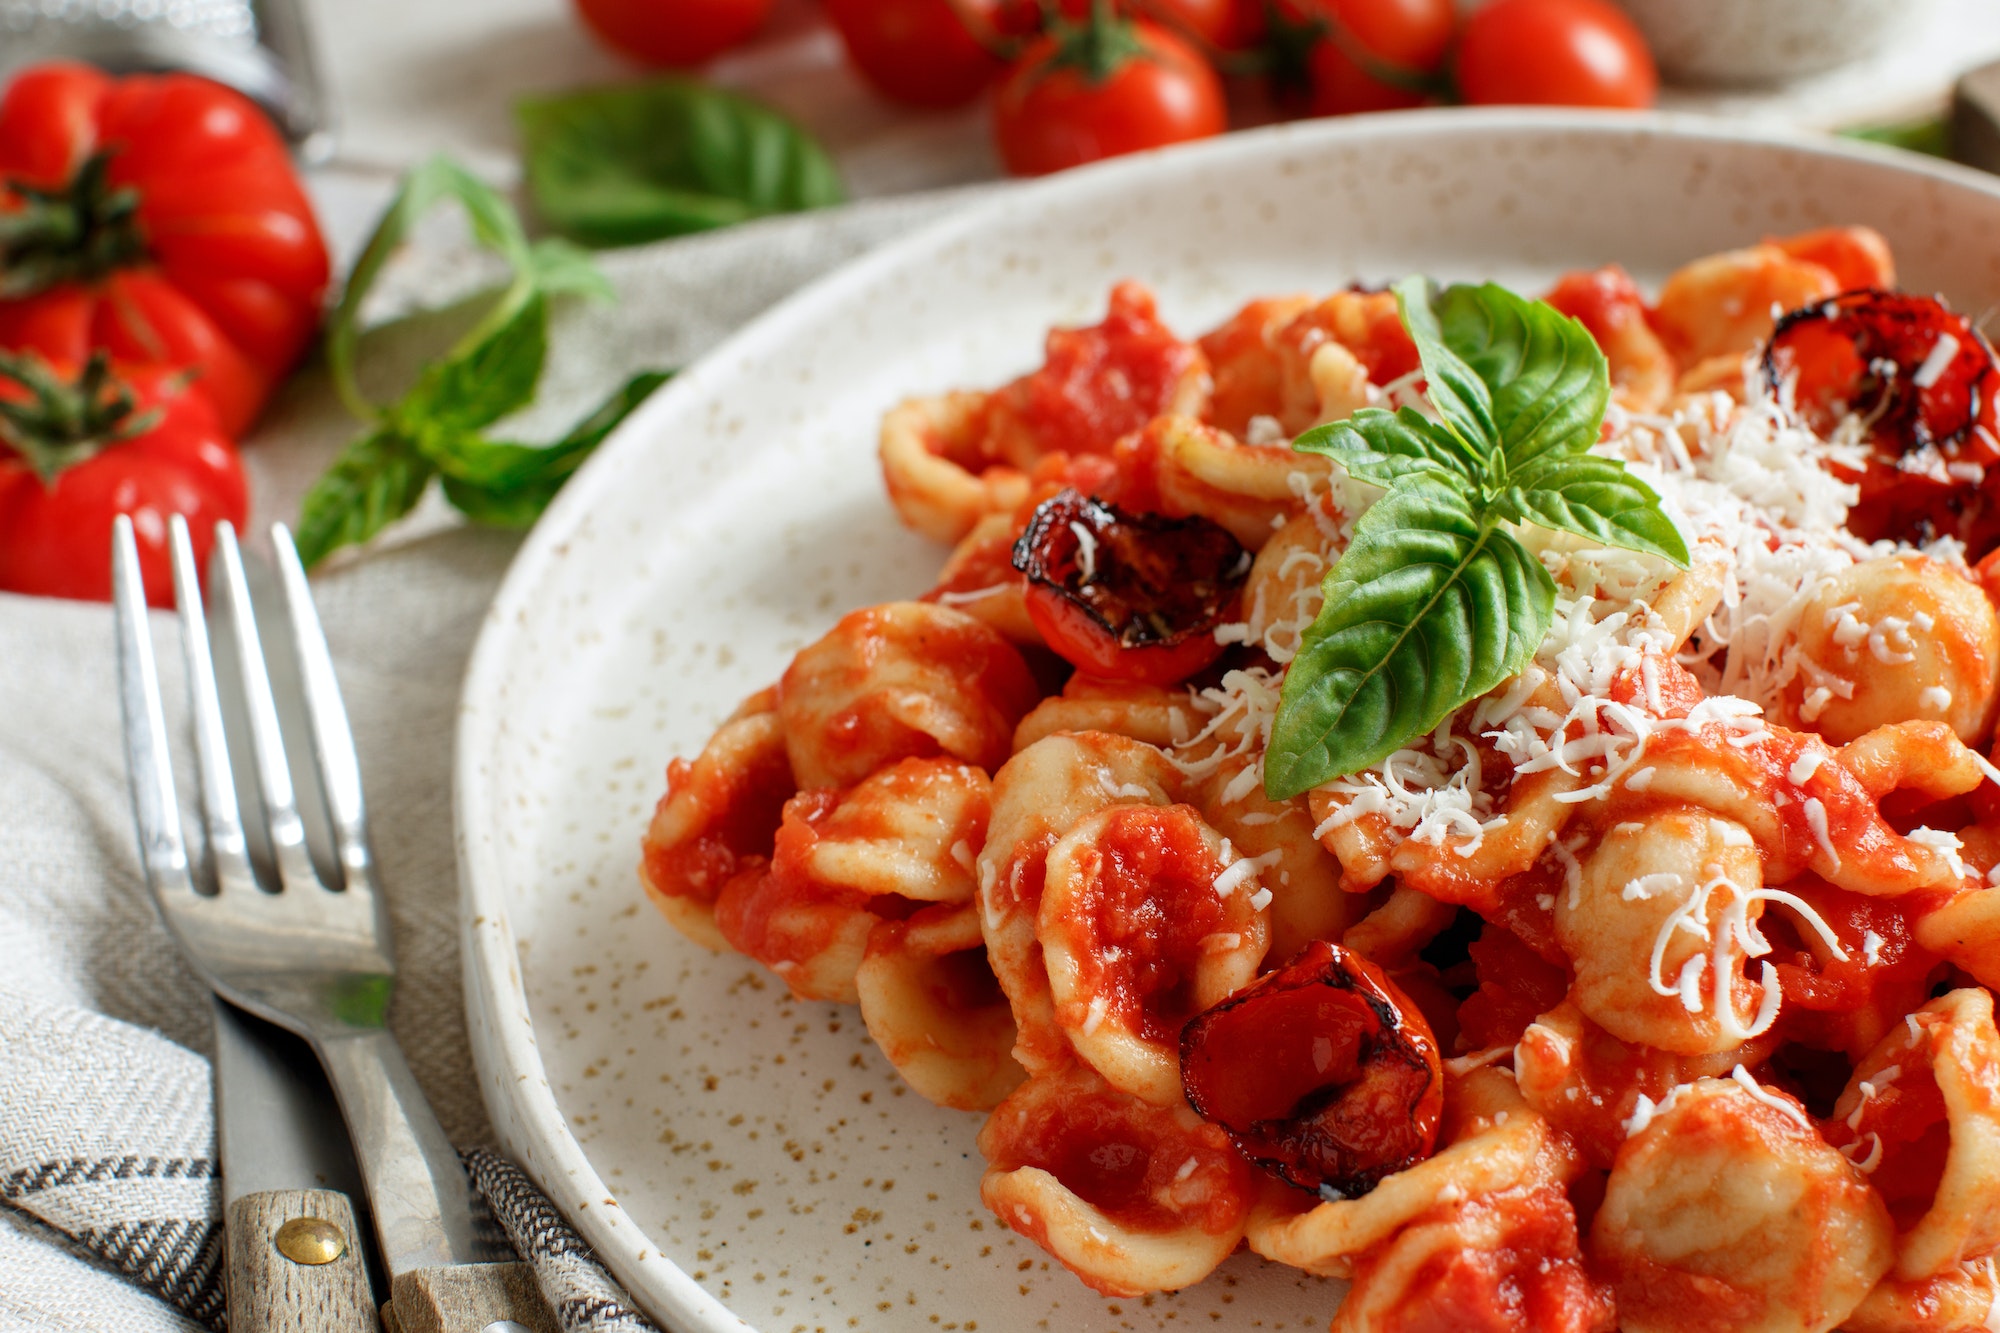 South italian pasta orecchiette with tomato sauce and cacioricotta cheese